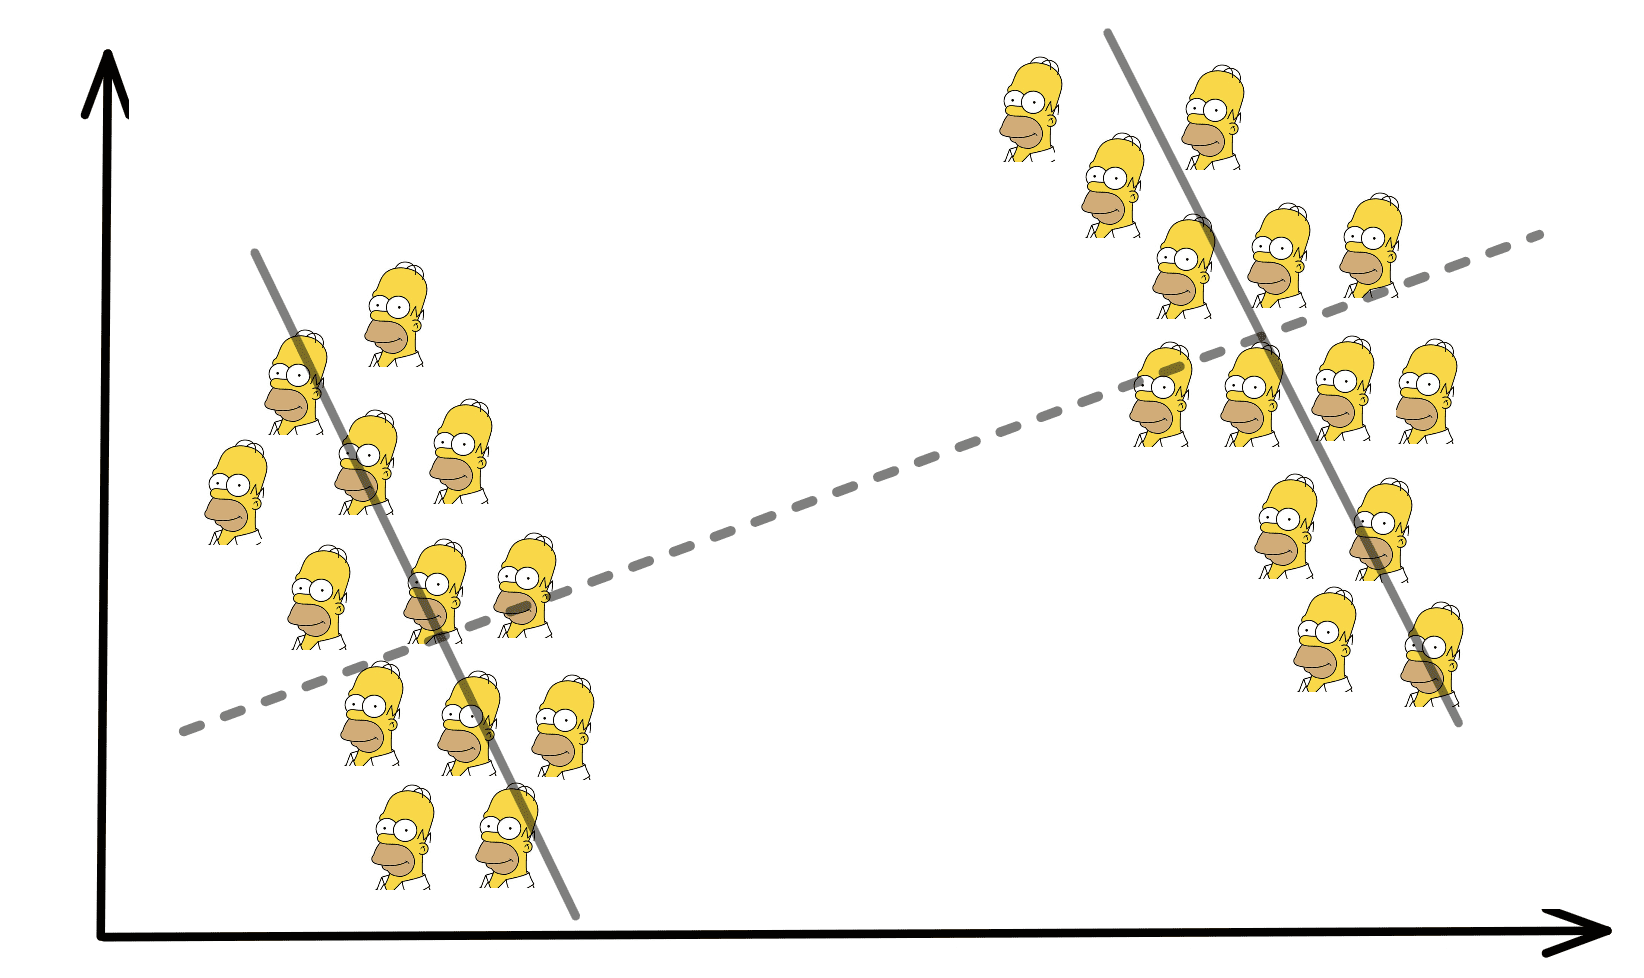 Simpson's paradox en de implicaties ervan in datawetenschap